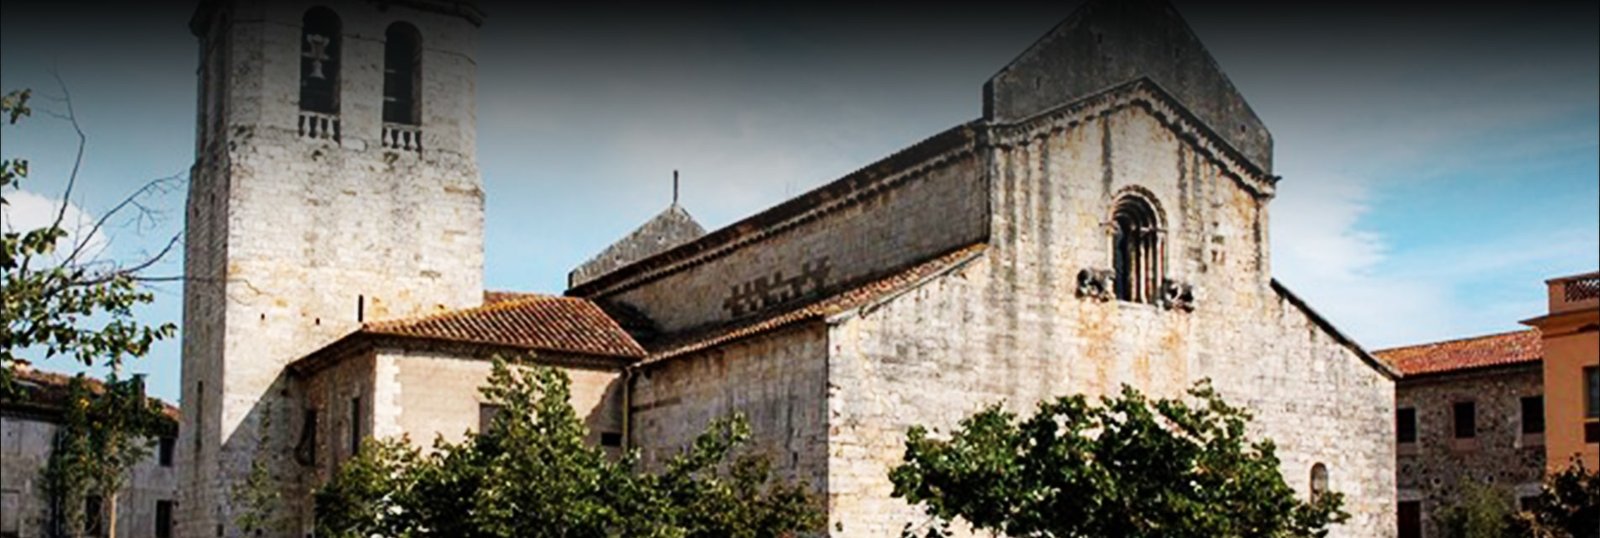 Monasterio de Sant Pere Besalú header - Origenes de Europa